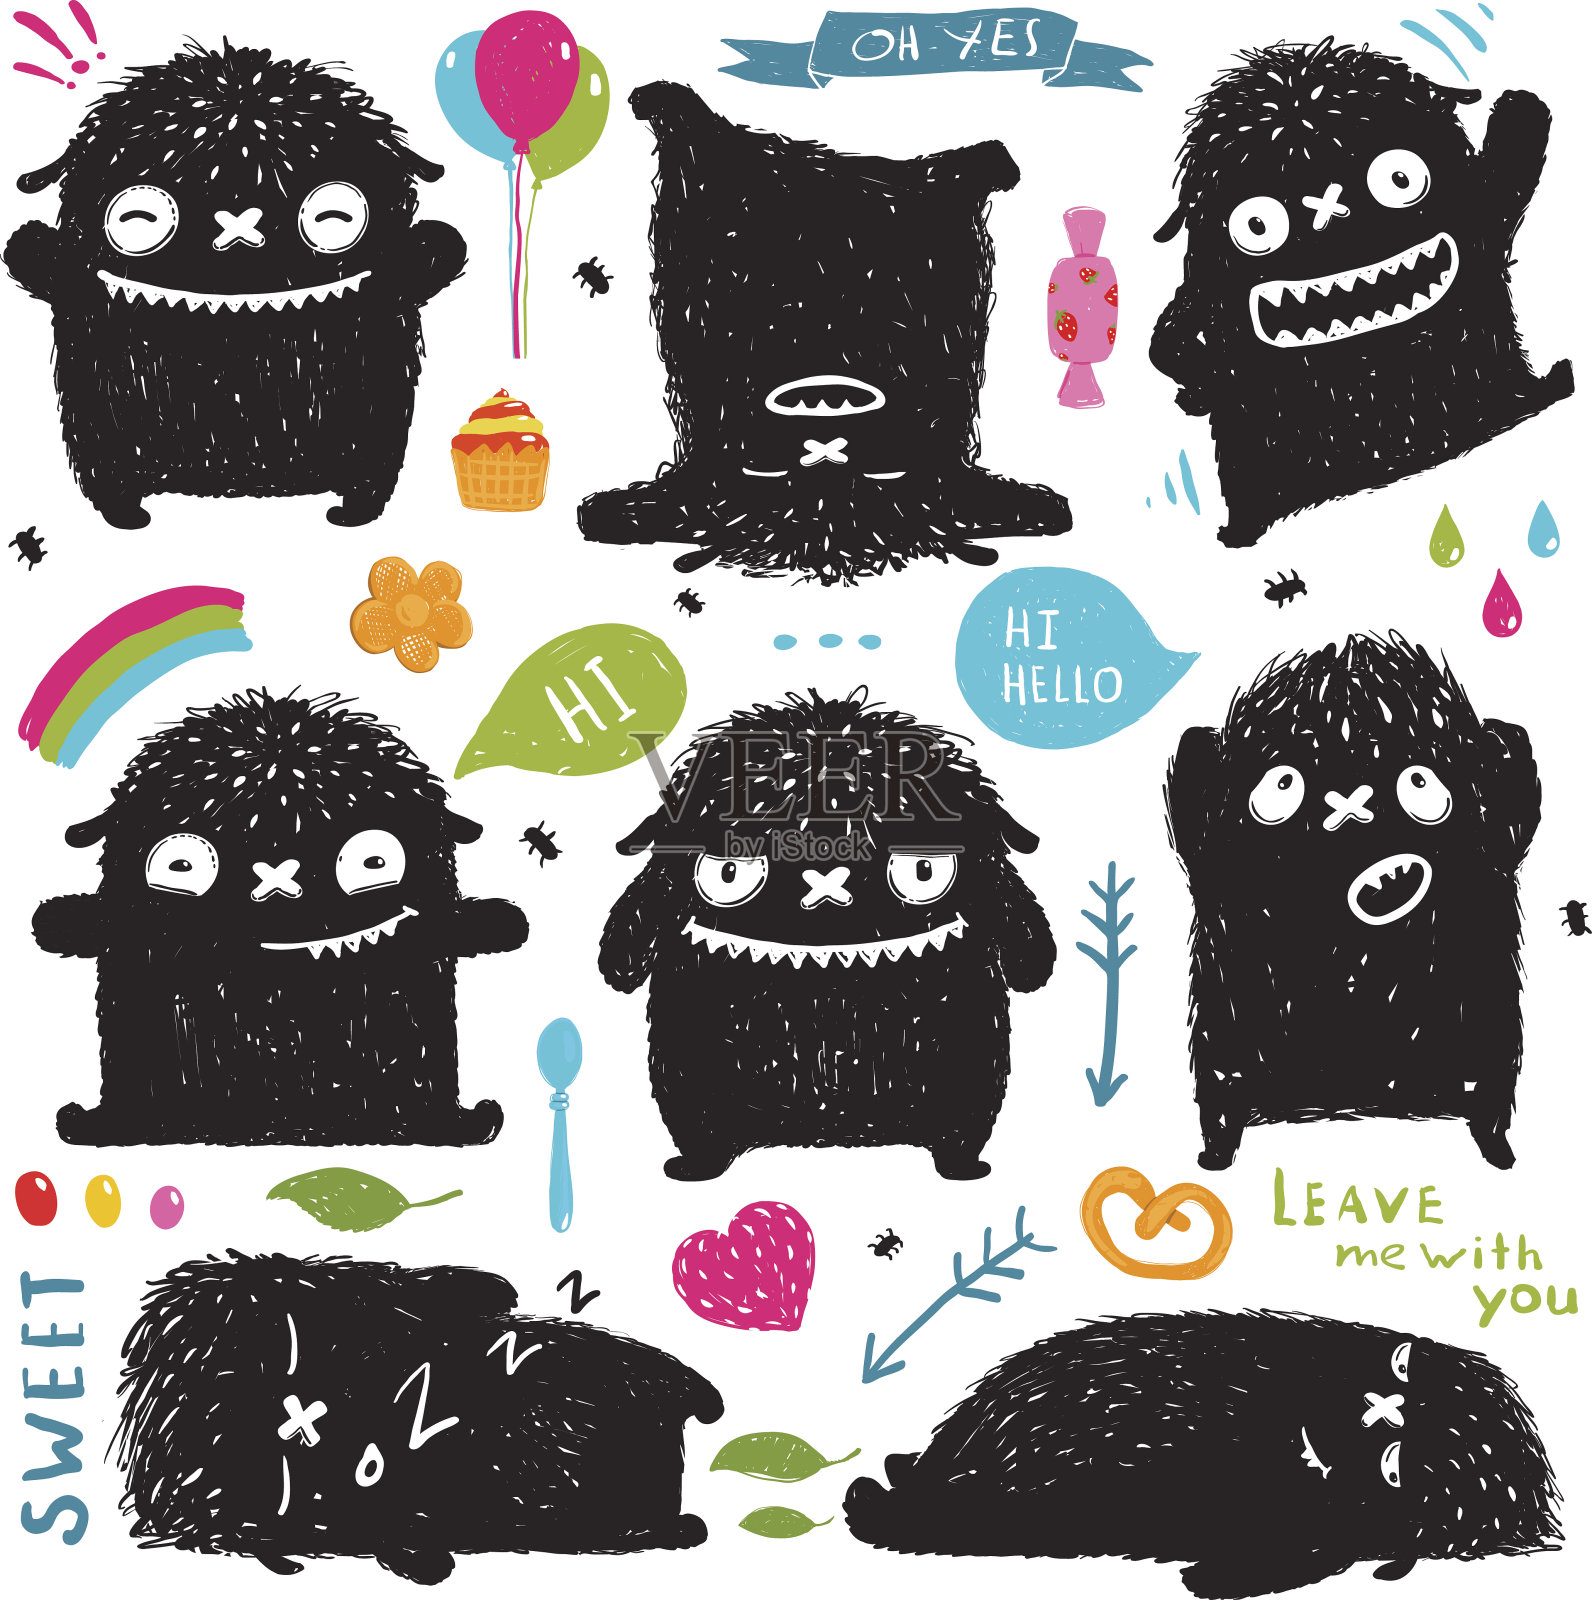 有趣可爱的小黑色怪物节日剪辑艺术收藏插画图片素材